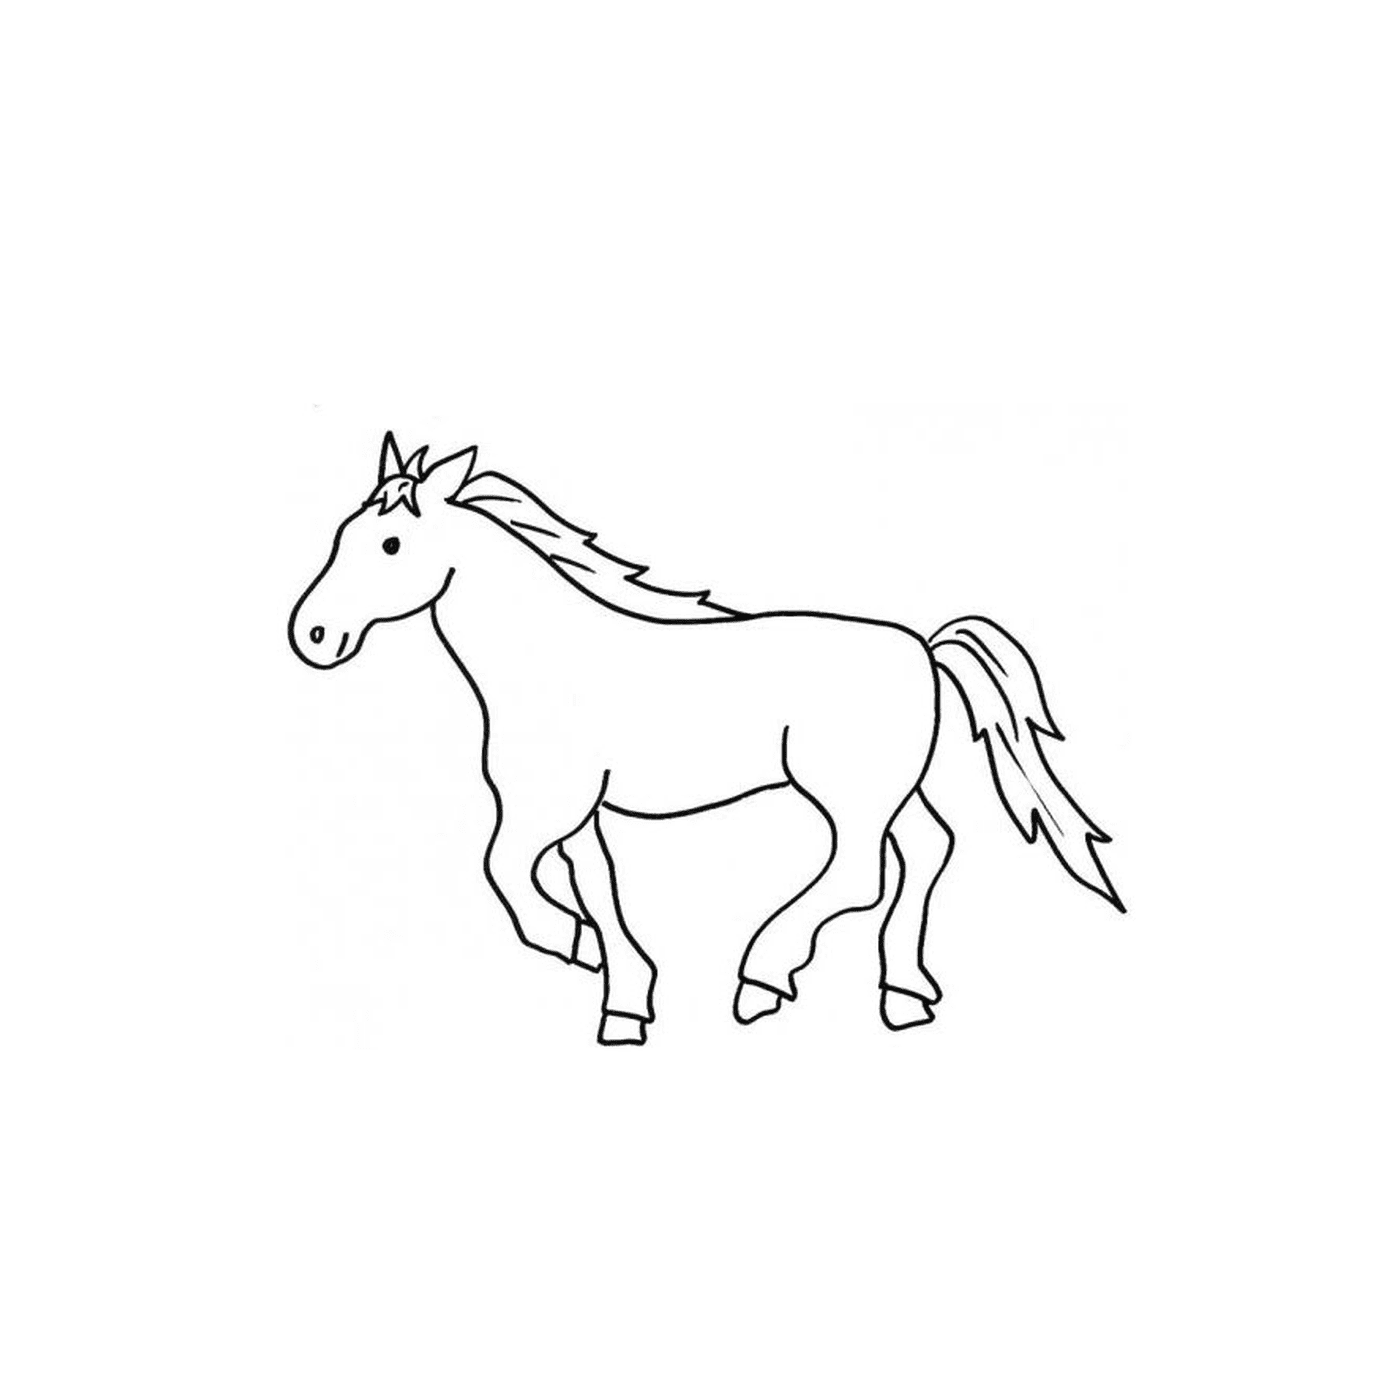  Арабская лошадь стоит на поле 